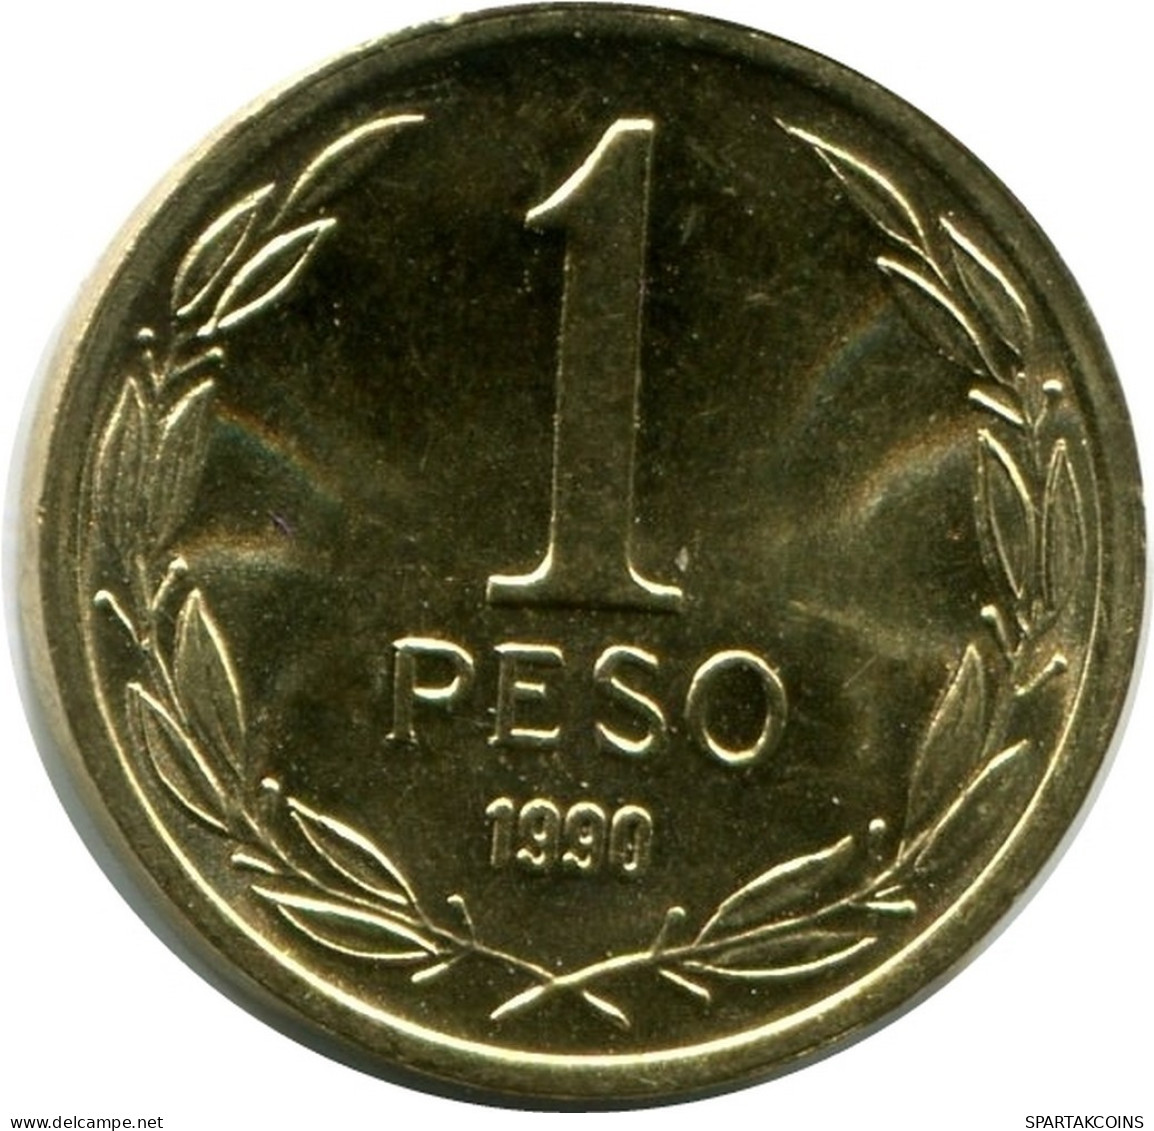 1 PESO 1990 CHILE UNC Coin #M10134.U.A - Chile